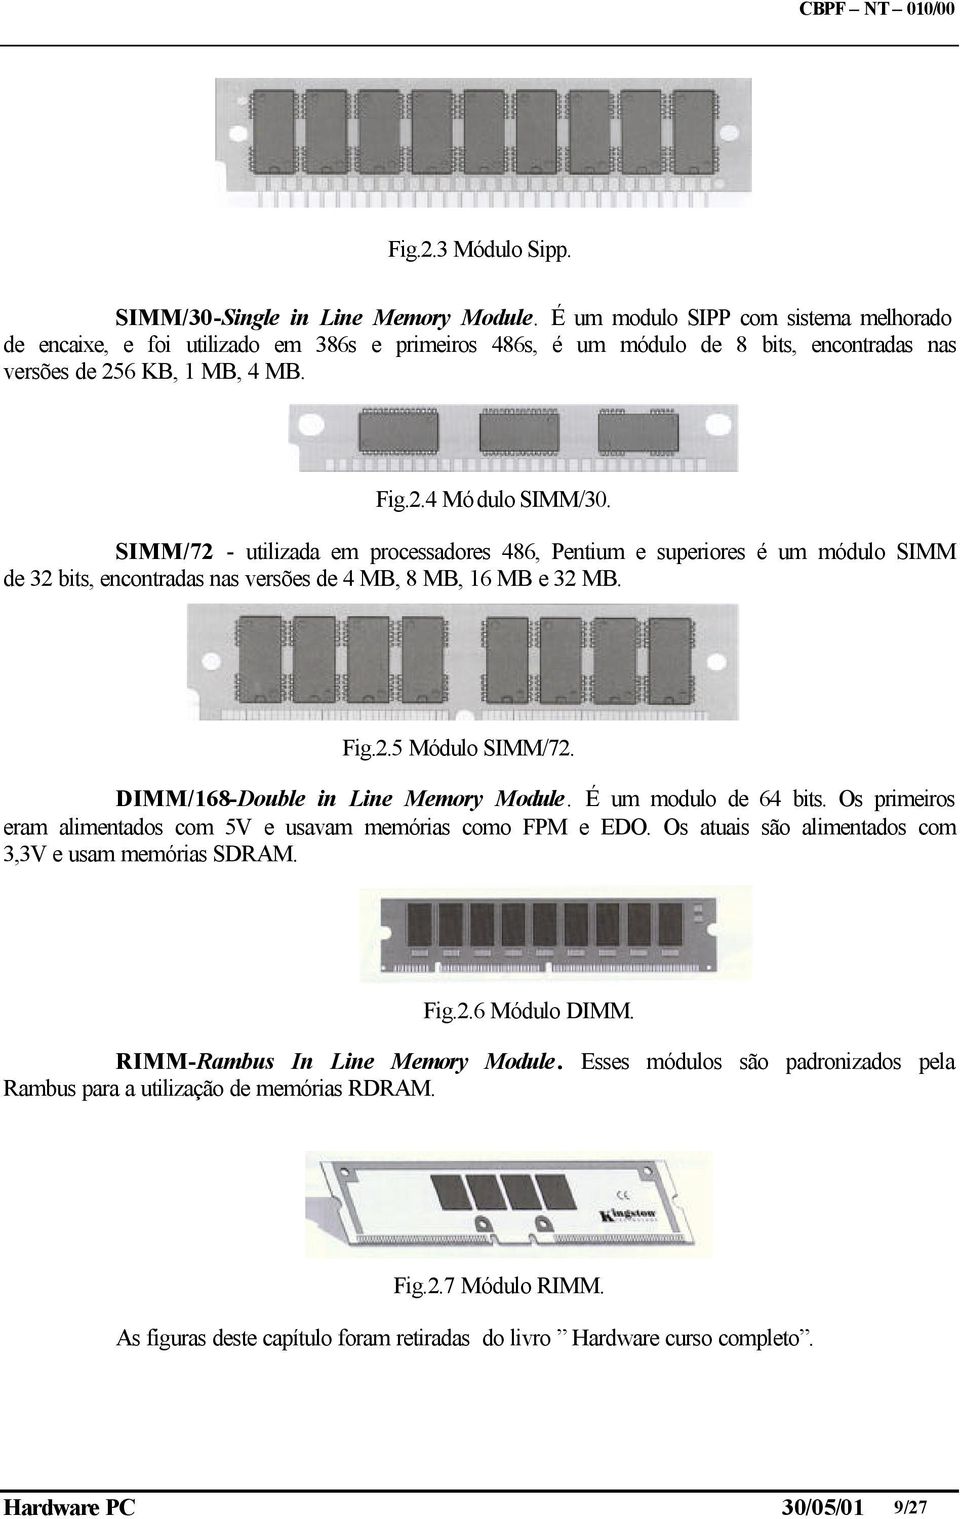 SIMM/72 - utilizada em processadores 486, Pentium e superiores é um módulo SIMM de 32 bits, encontradas nas versões de 4 MB, 8 MB, 16 MB e 32 MB. Fig.2.5 Módulo SIMM/72.